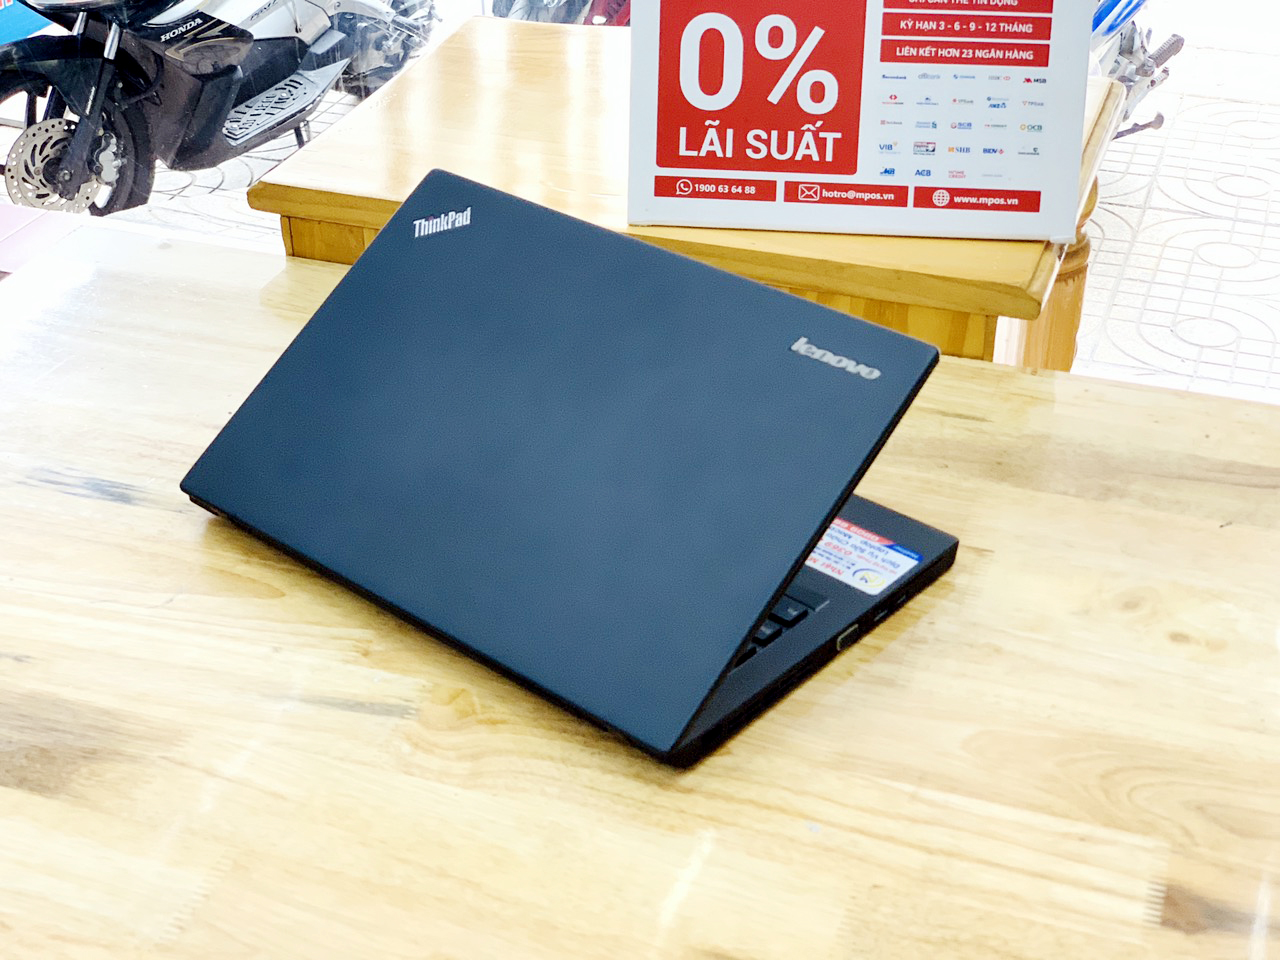 Lenovo Thinkpad X240 